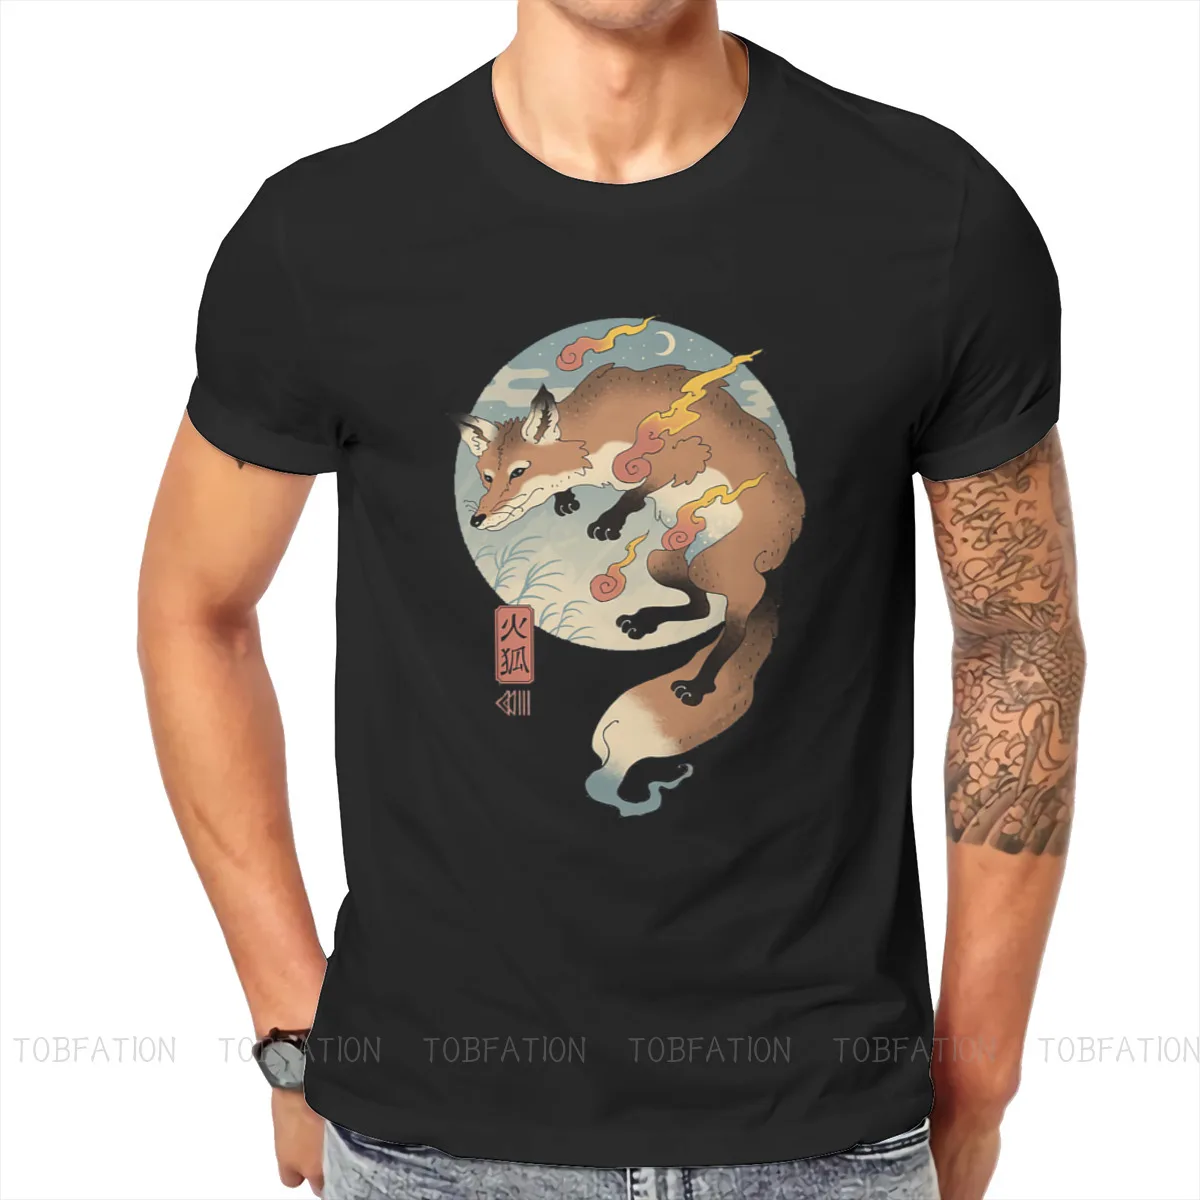 

Уникальная футболка Fire Fox, животное, искусство, культура, удобная, новый дизайн, идея для подарка, футболка с коротким рукавом, предложения